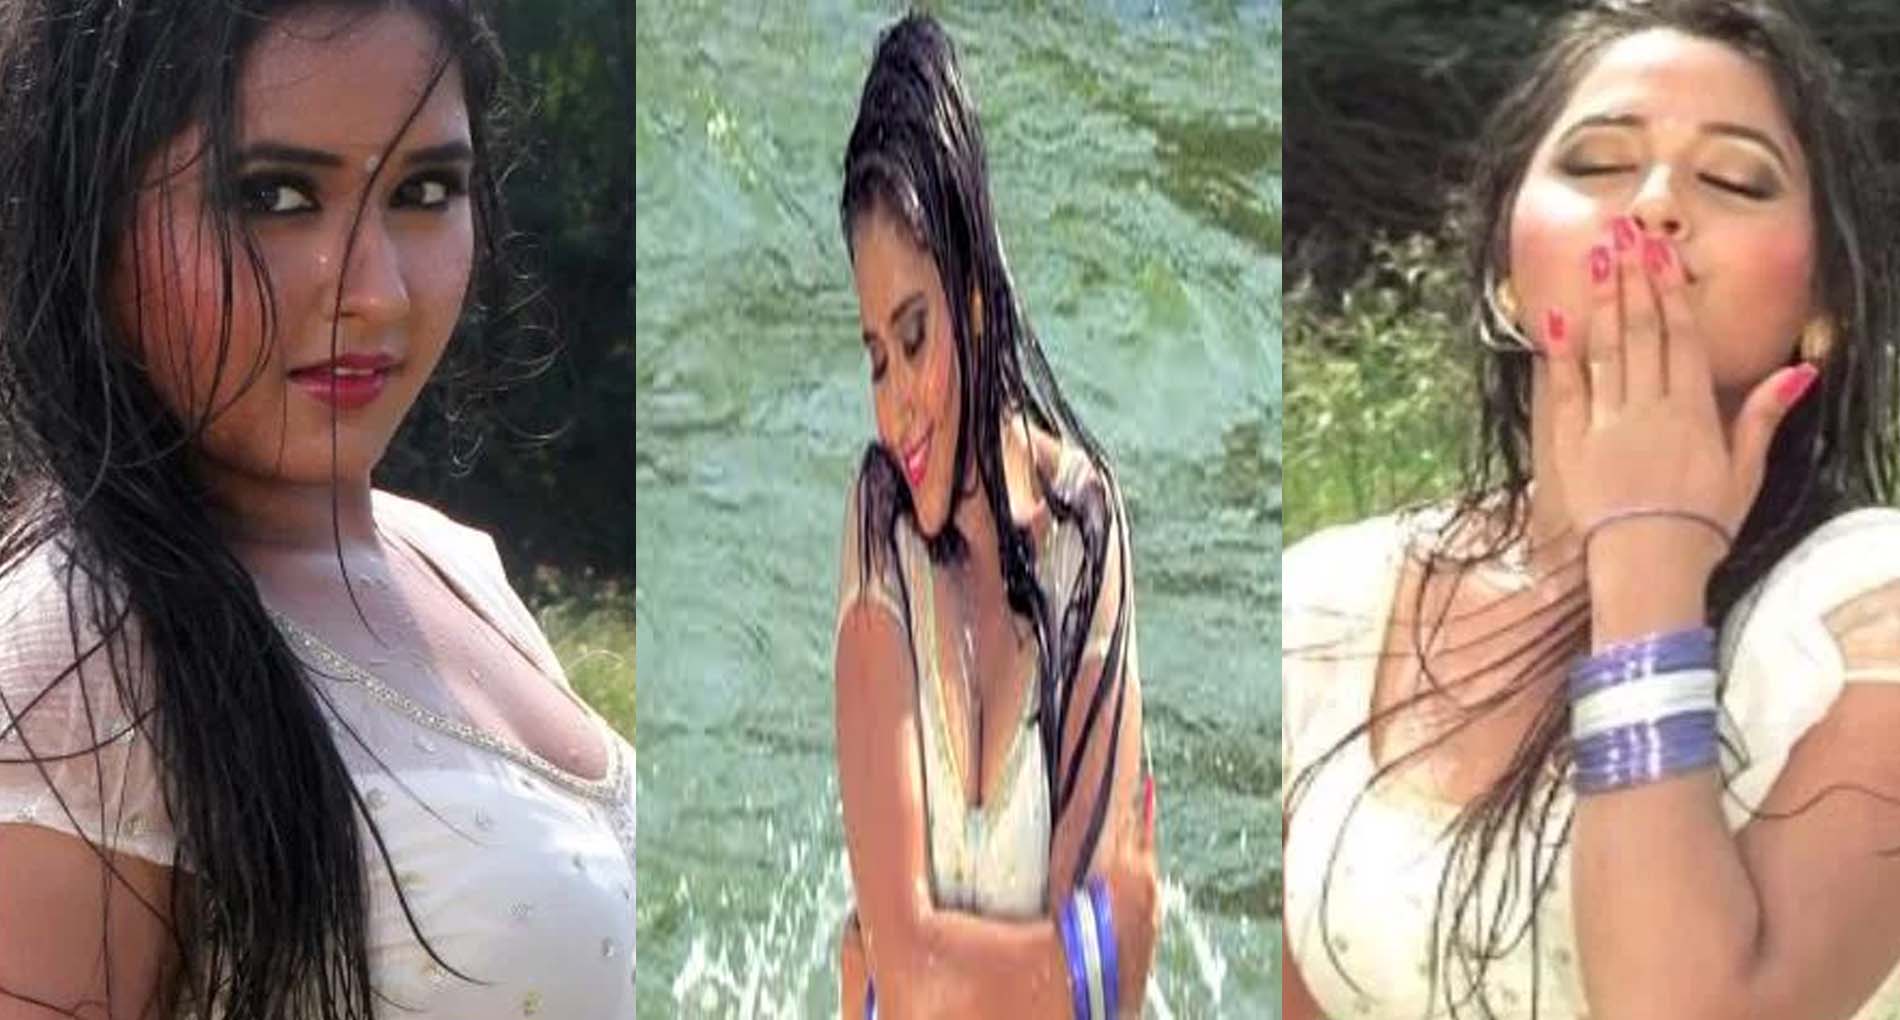 Kajal Ki Sex Video - Kajal Raghwani Hot Video: à¤•à¤¾à¤œà¤² à¤°à¤¾à¤˜à¤µà¤¾à¤¨à¥€ à¤•à¥‡ à¤¹à¥‰à¤Ÿ à¤µà¥€à¤¡à¤¿à¤¯à¥‹ à¤¨à¥‡ à¤¬à¤¢à¤¼à¤¾à¤¯à¤¾ à¤¤à¤¾à¤ªà¤®à¤¾à¤¨,  à¤¦à¥‡à¤–à¥‡à¤‚ Video